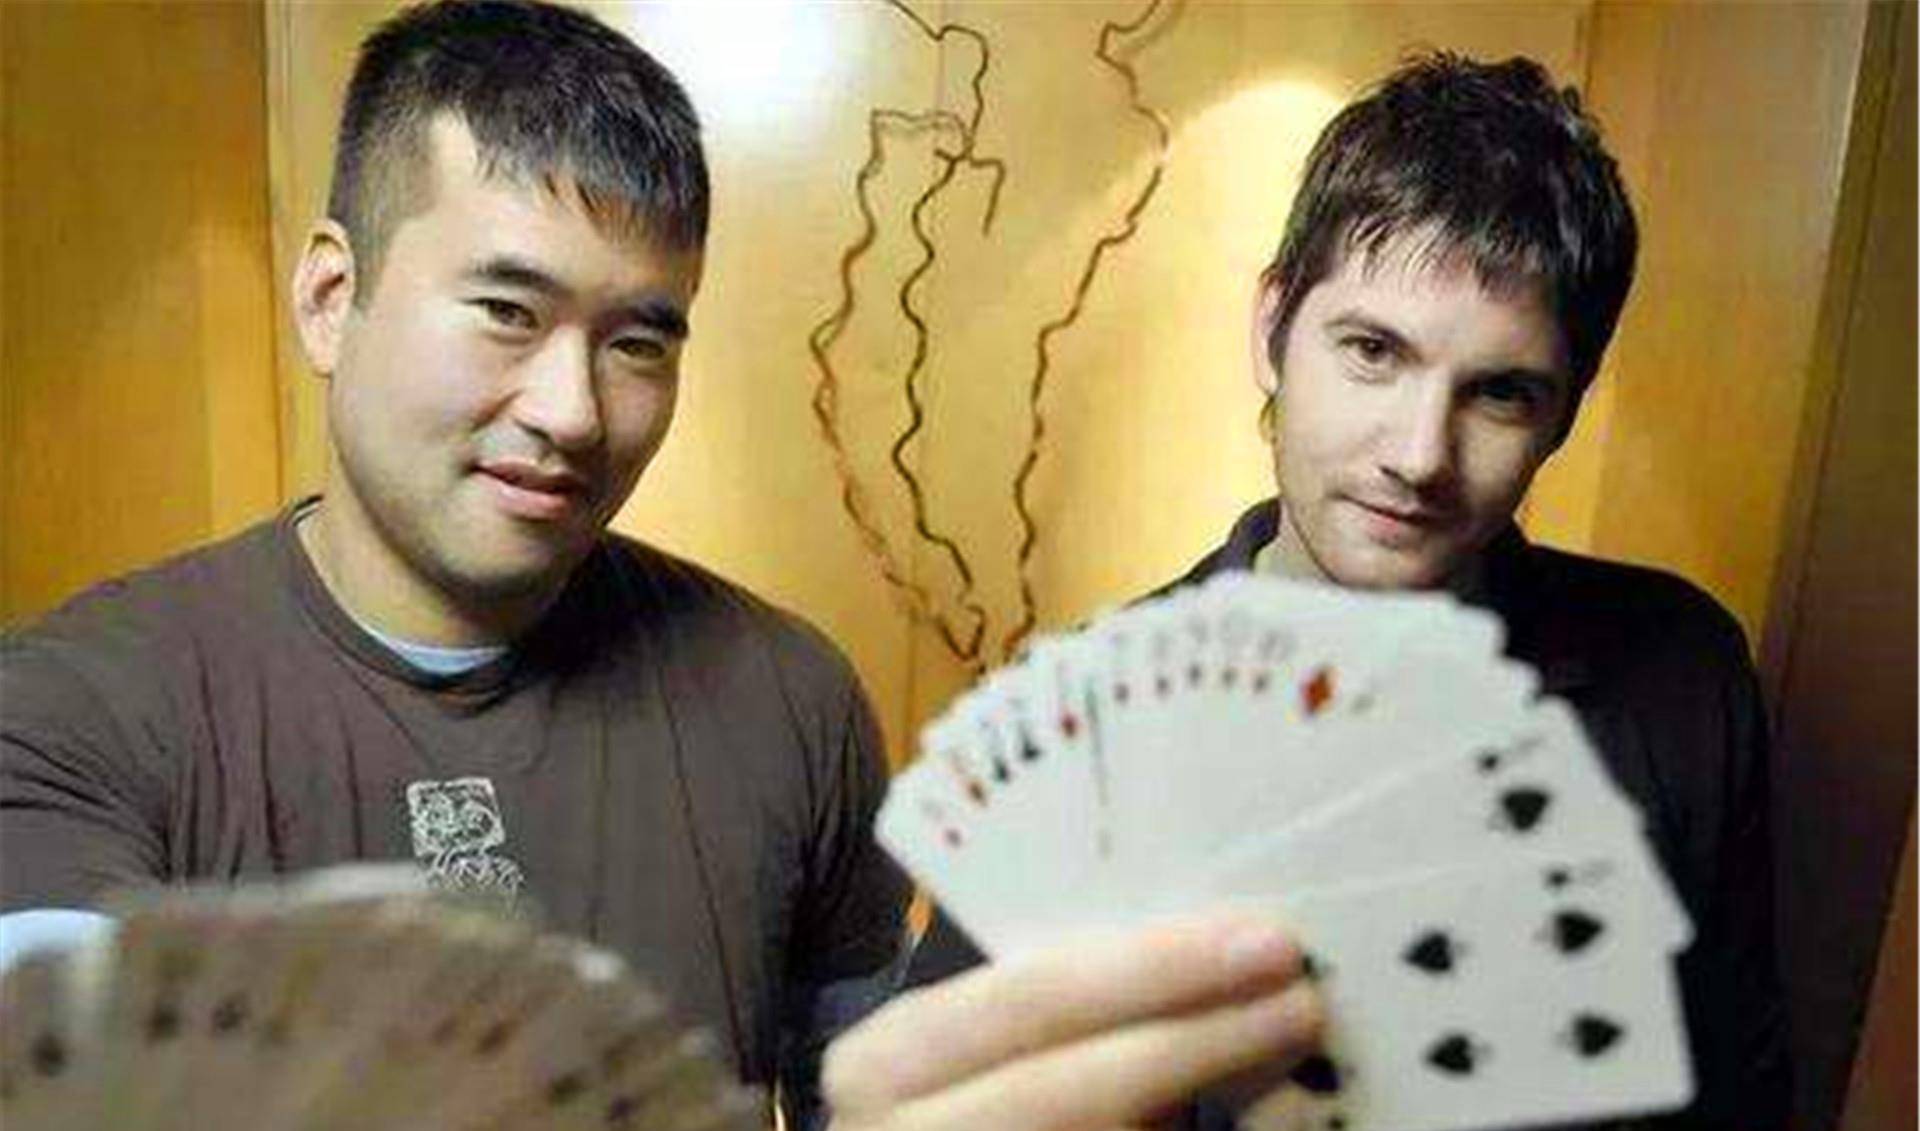 华裔数学天才横扫美国赌场,只因赢得太多,被美国赌场联名抵制